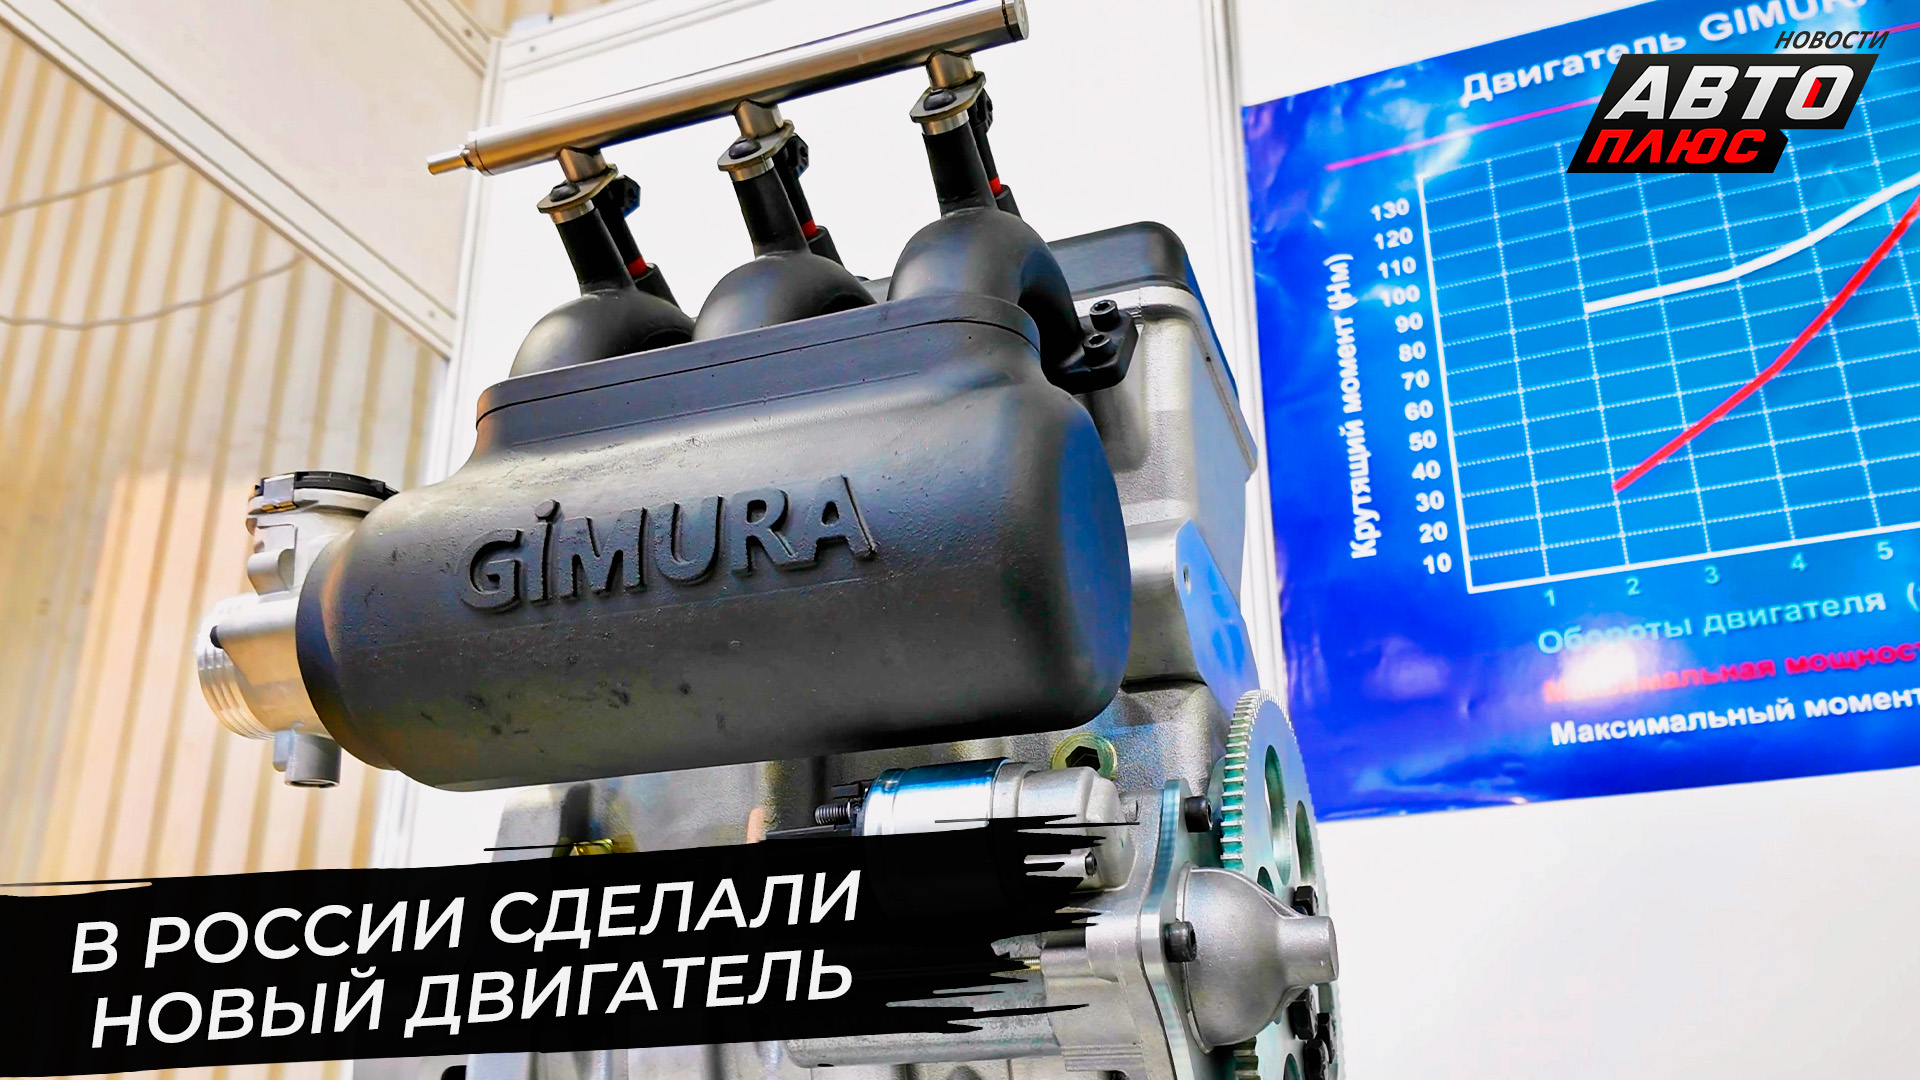 Gimura 1000 S — новый российский двигатель 